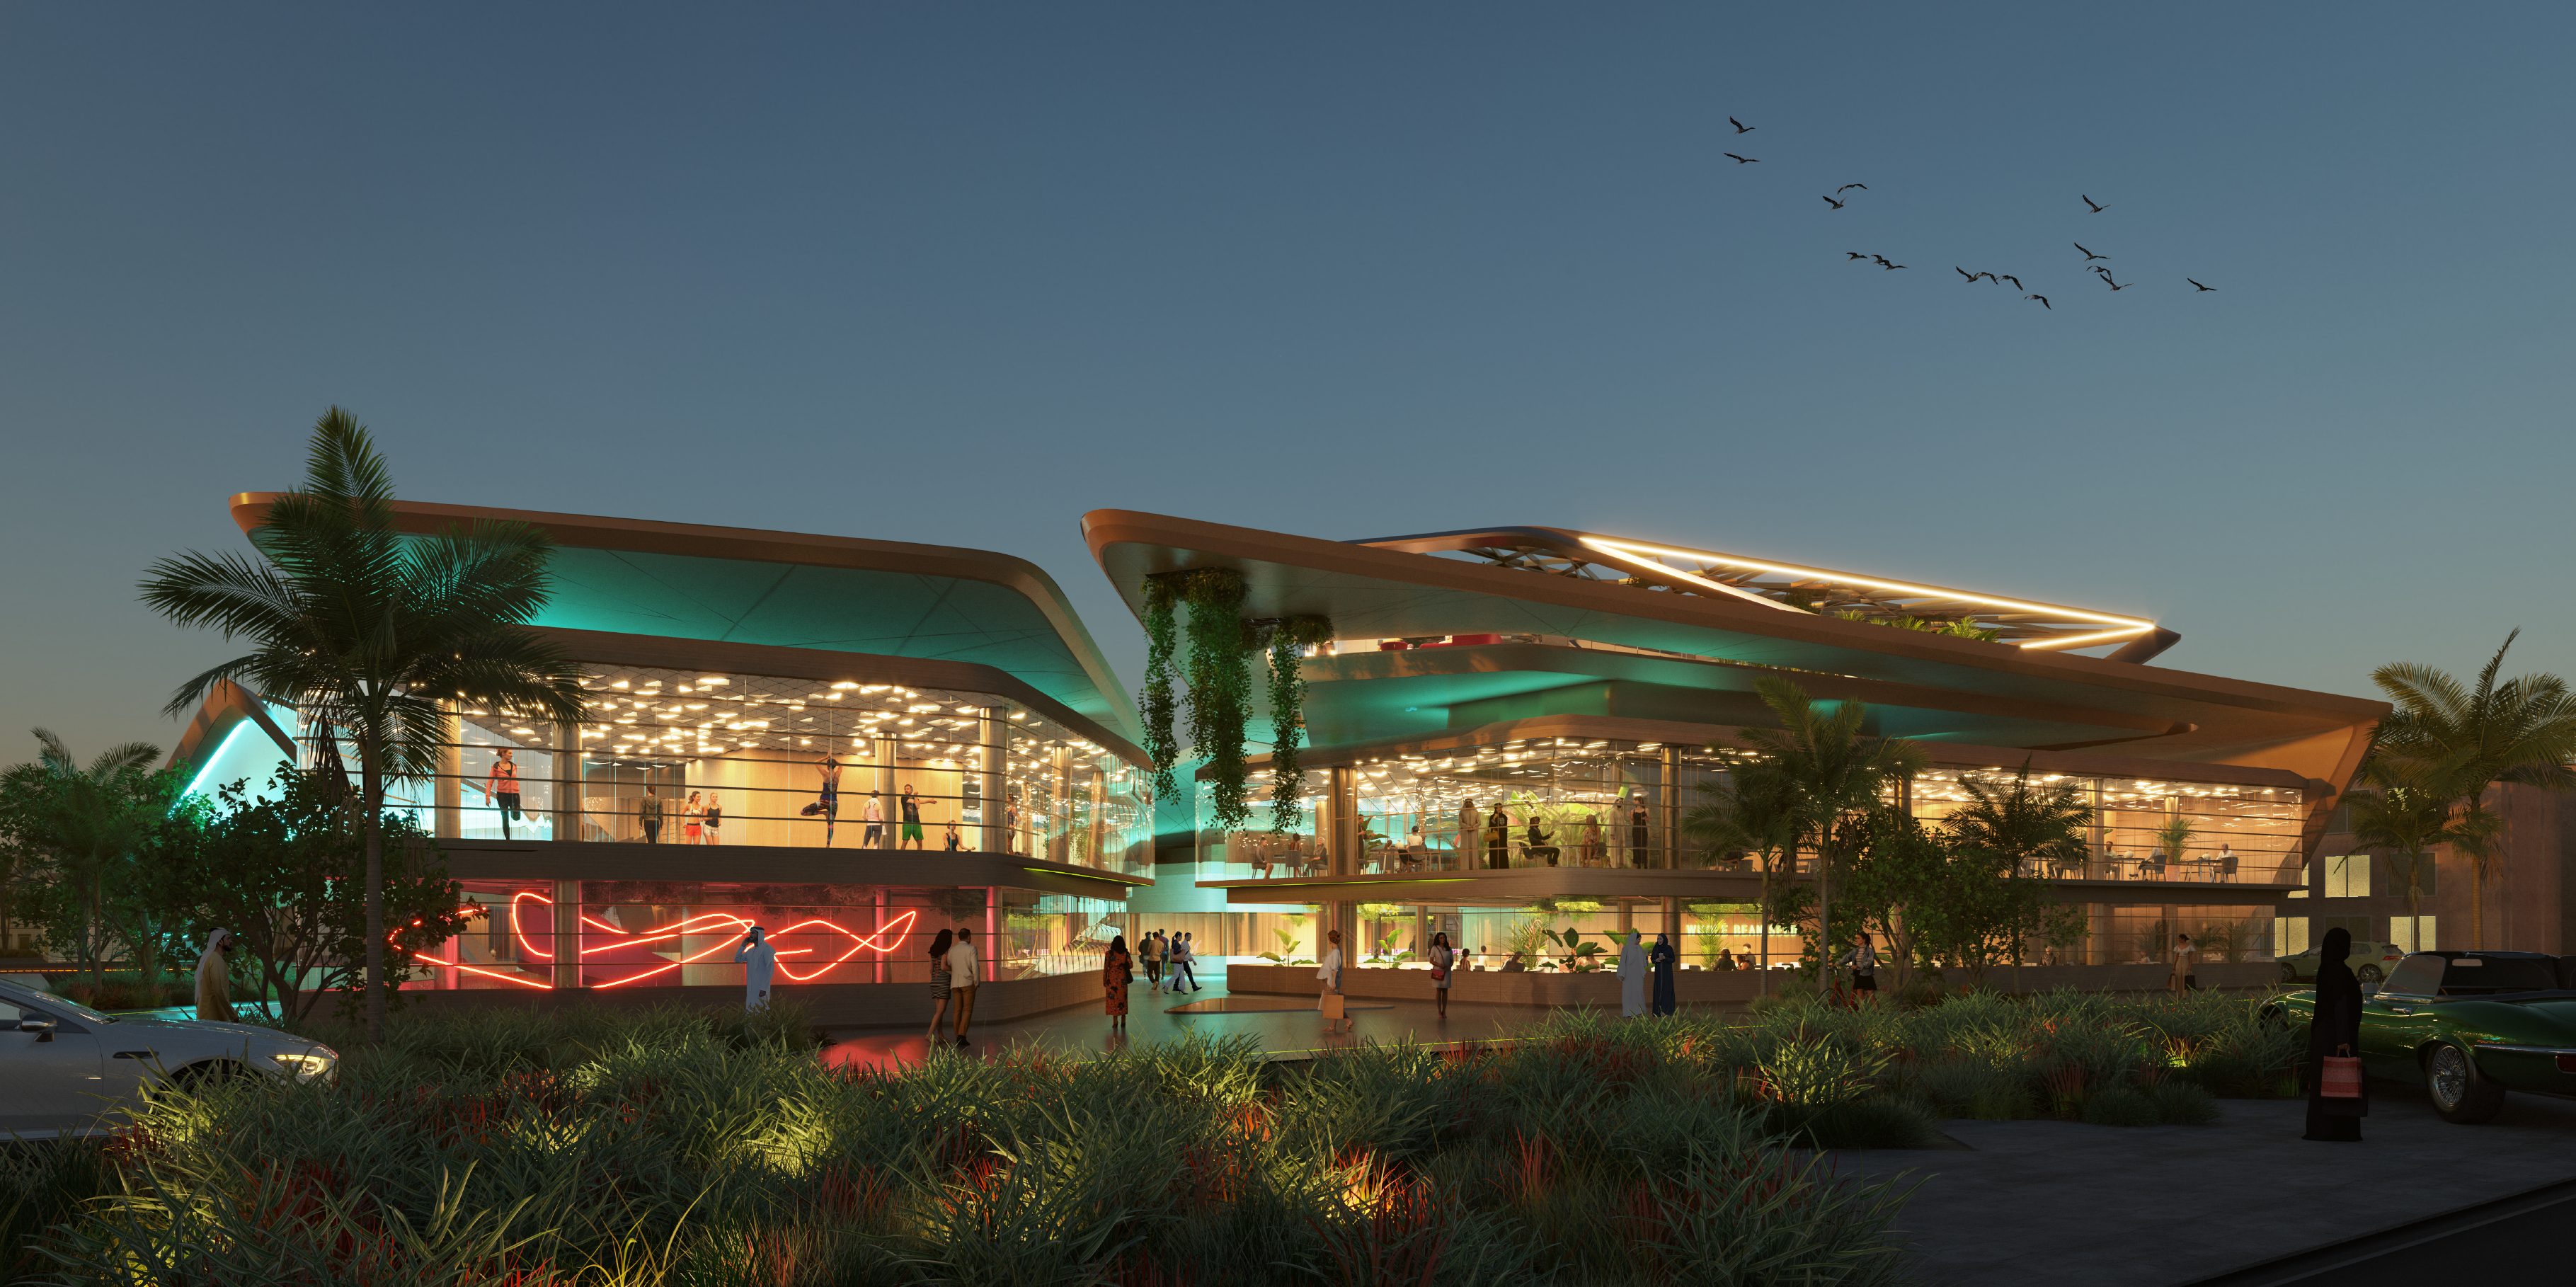 Rendering 3D di un centro commerciale moderno con metà wireframe colorato e metà renderizzata.